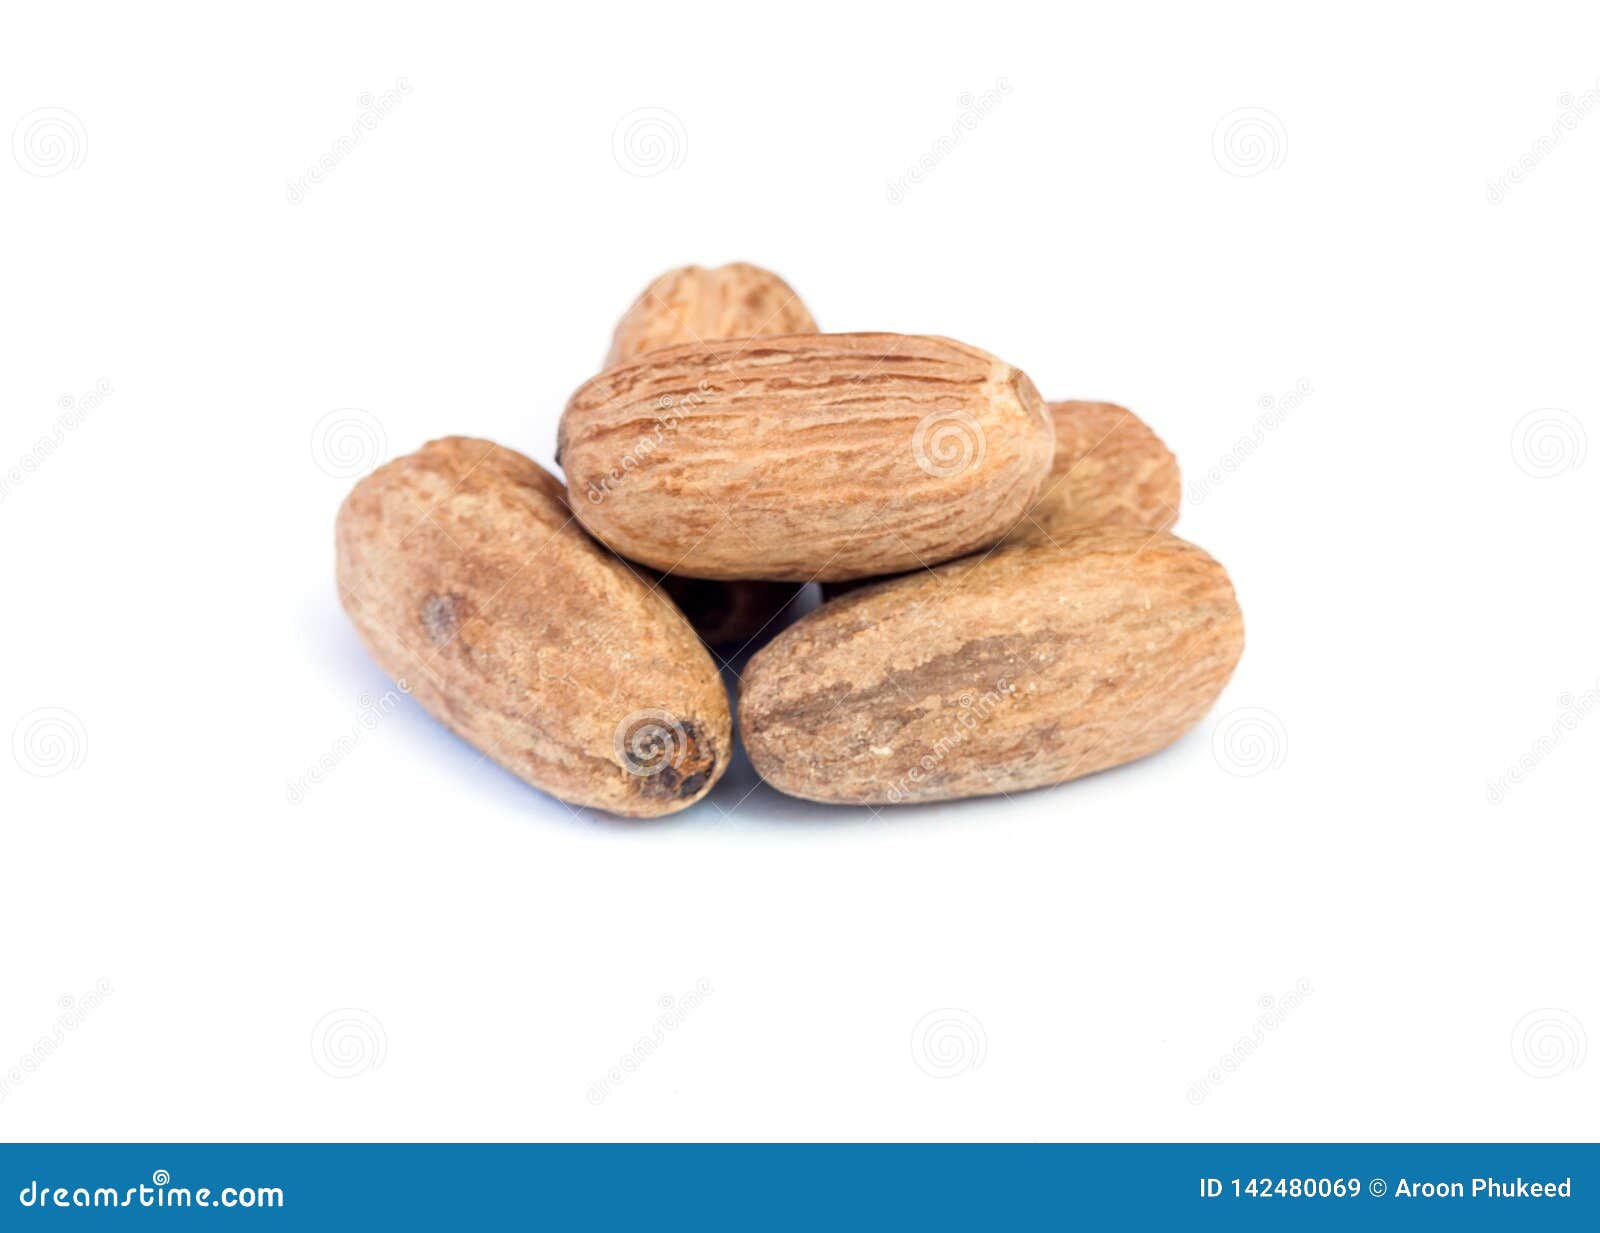 nutmeg on wooden over white background.